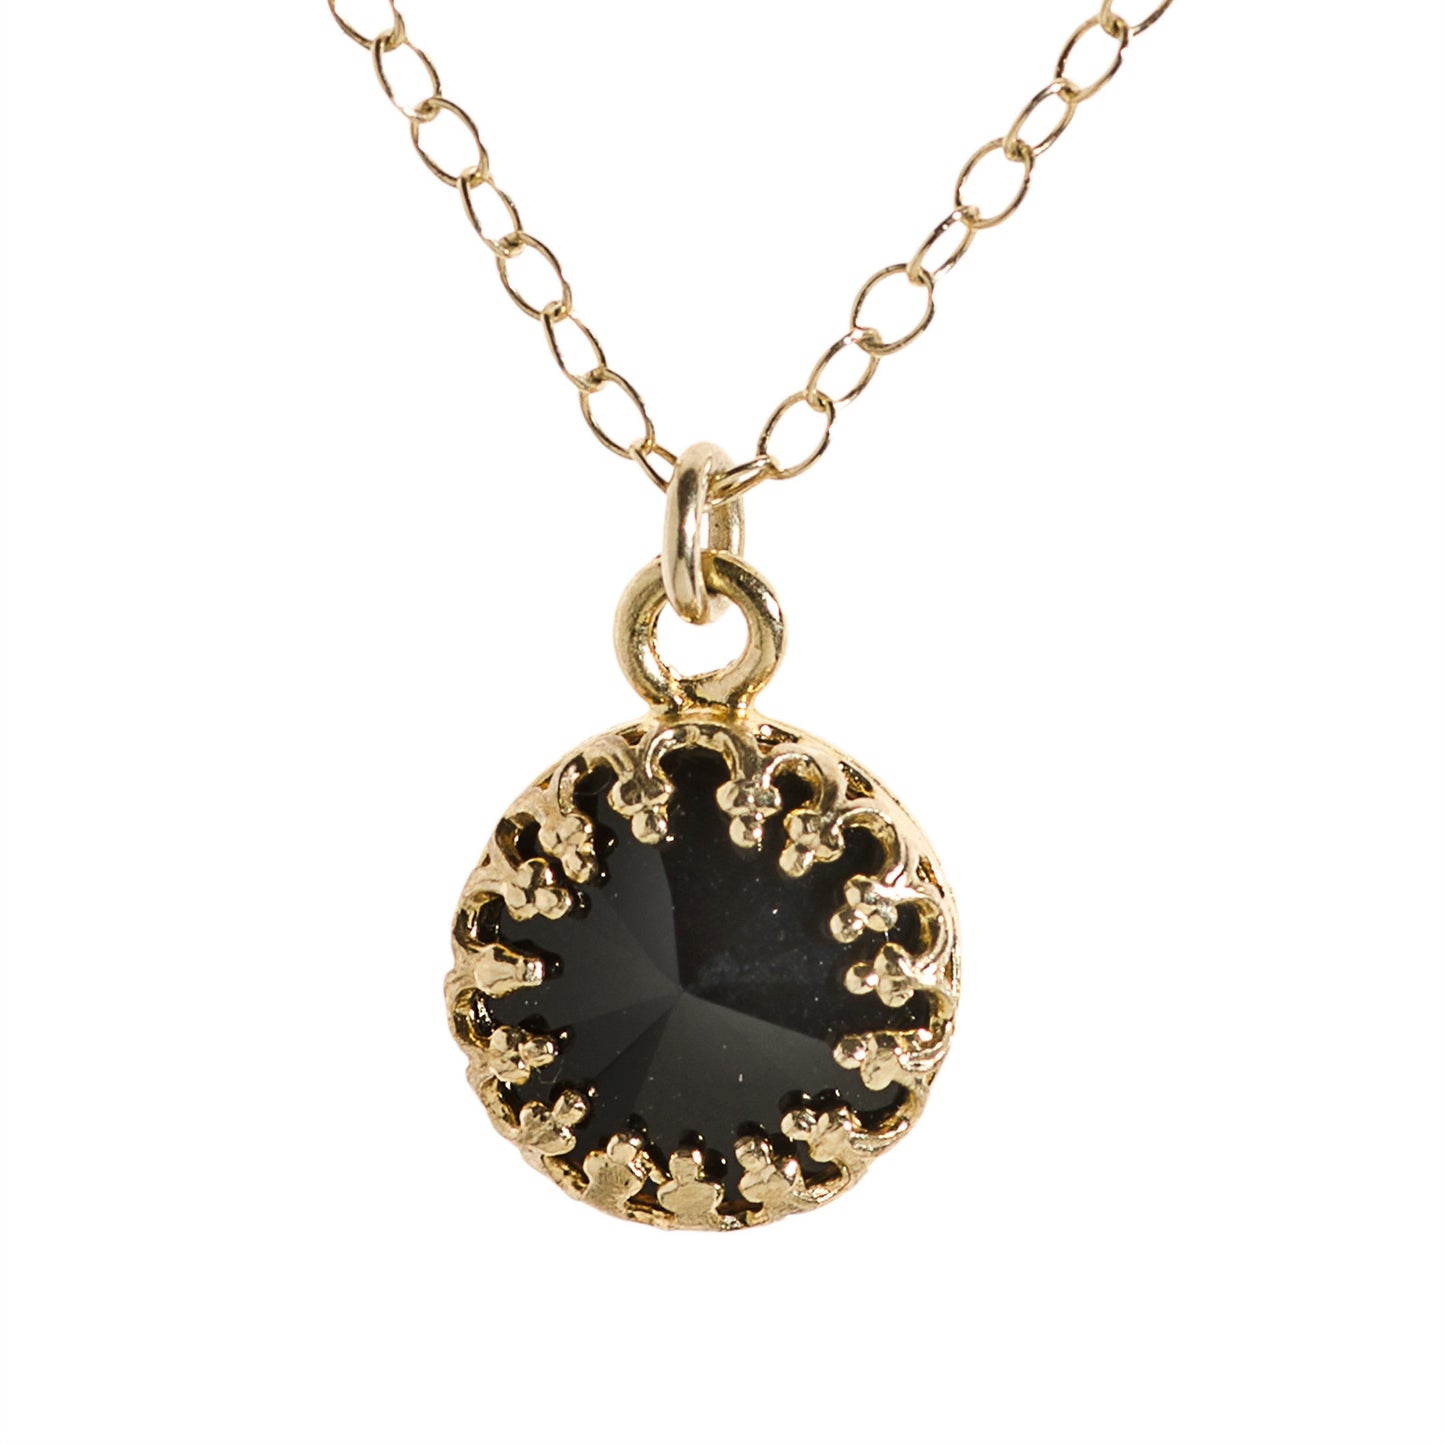 Black pendant necklace